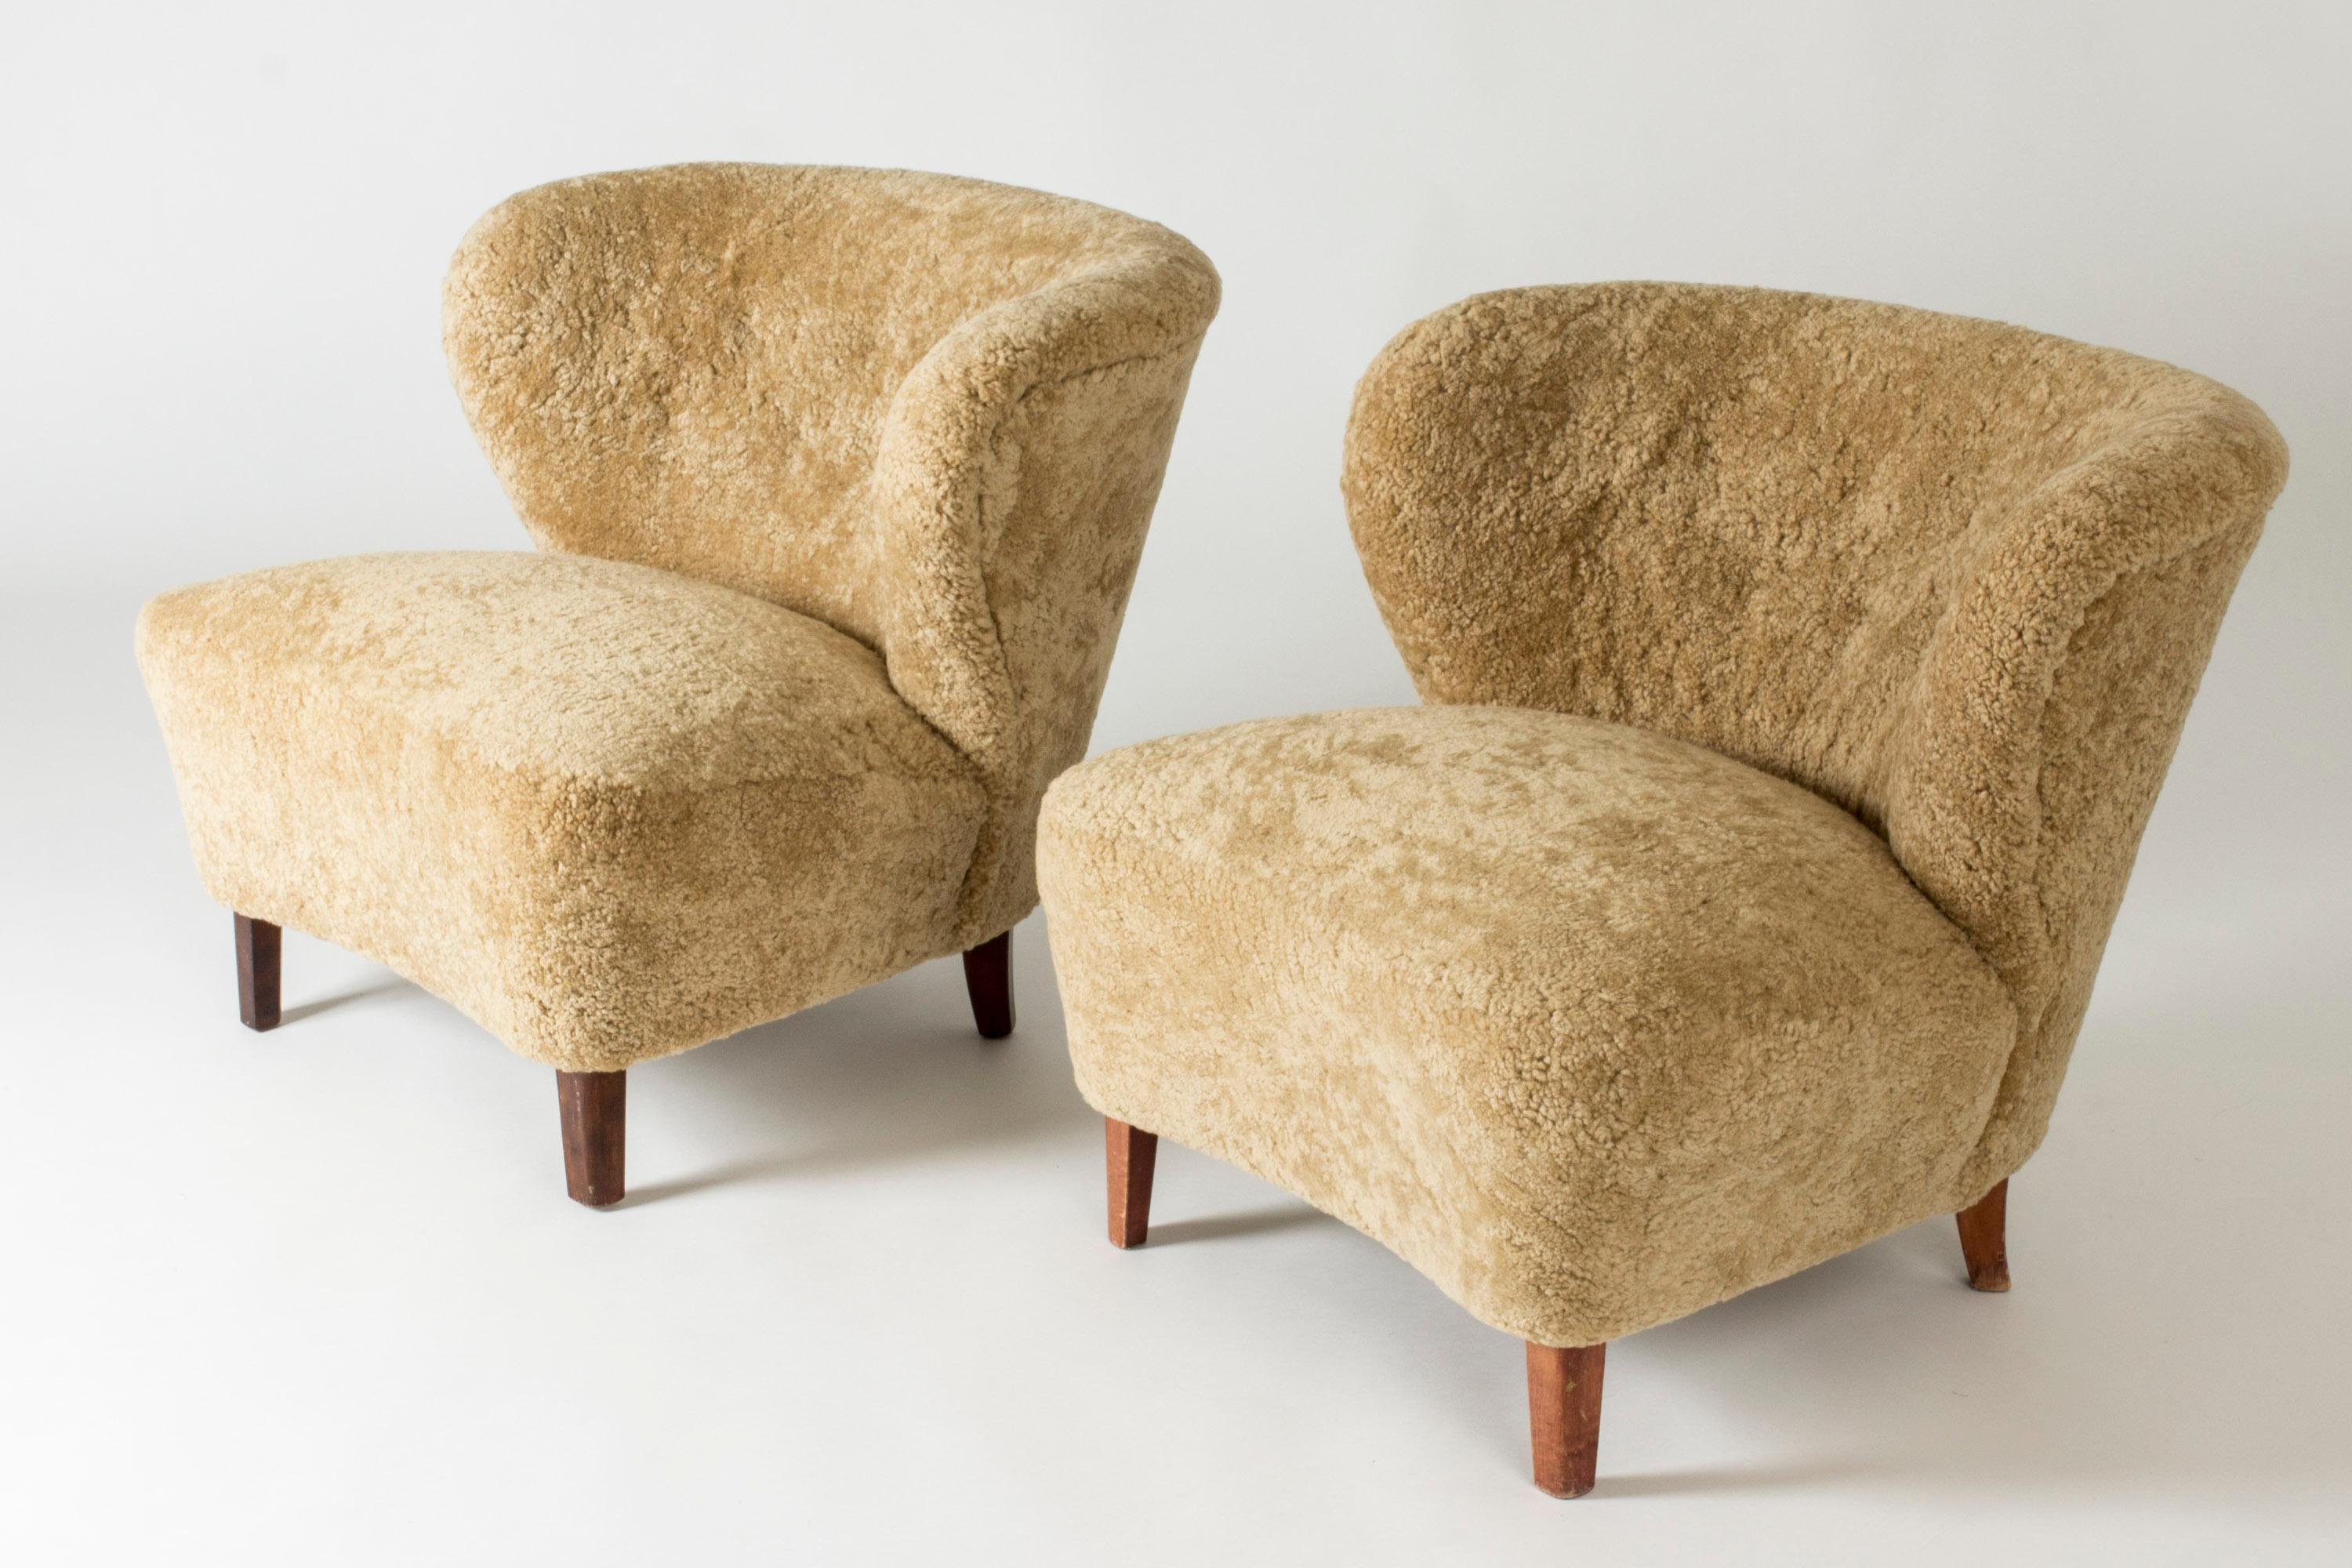 Ein Paar elegante Loungesessel von Gösta Jonsson, gepolstert mit karamellfarbenem Schafsleder. Ein klobiges Design mit großzügigen Linien.